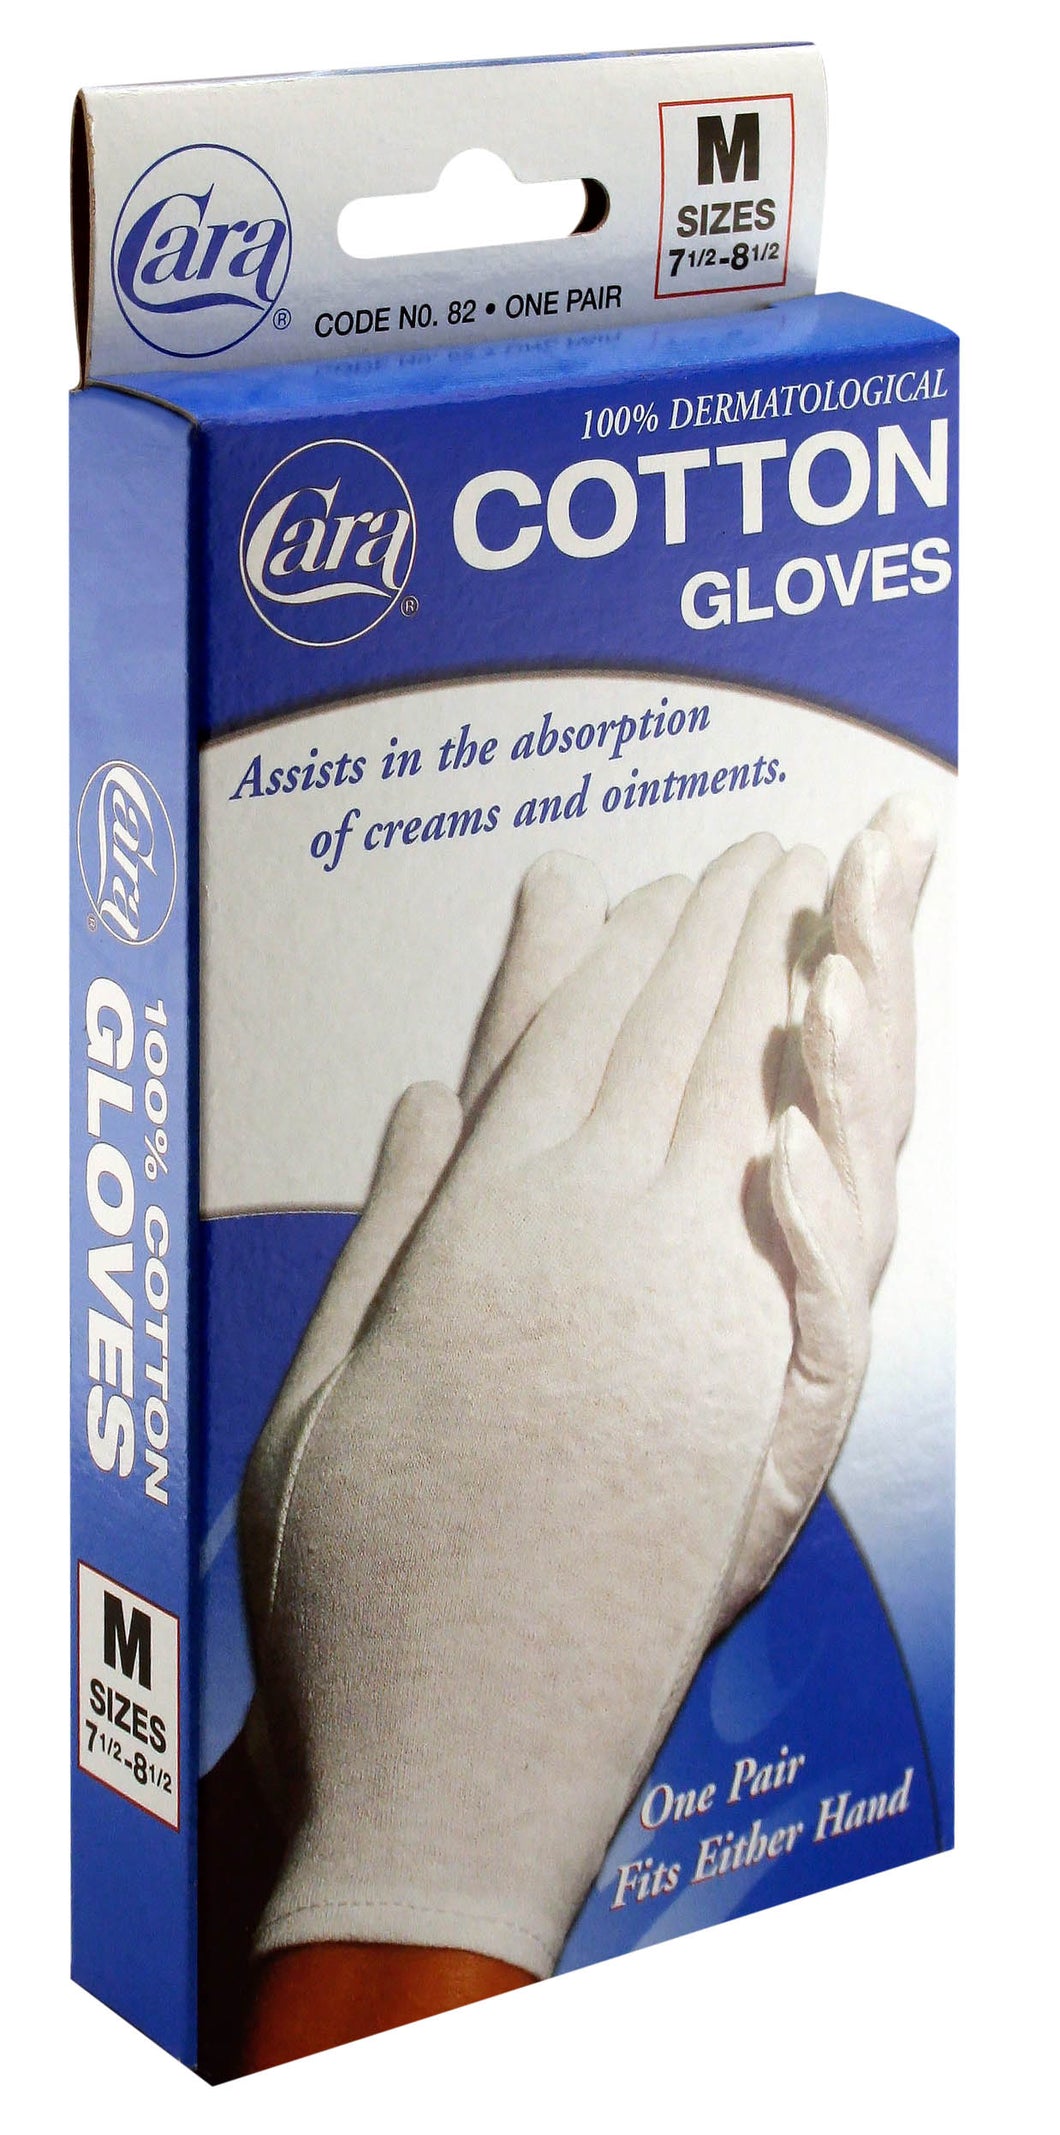 Dermatological Cotton Gloves - Medium